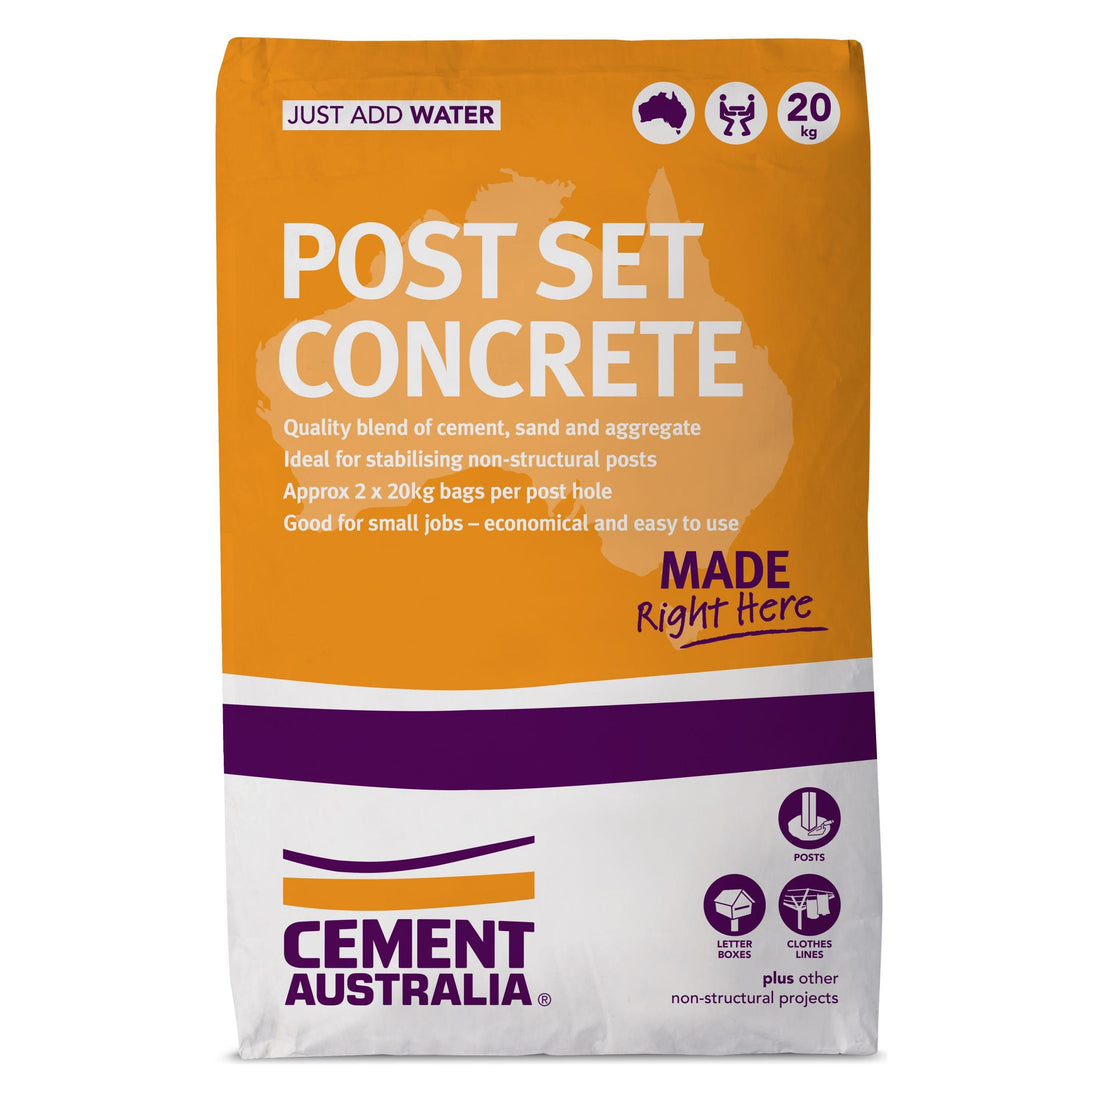 Post set concrete